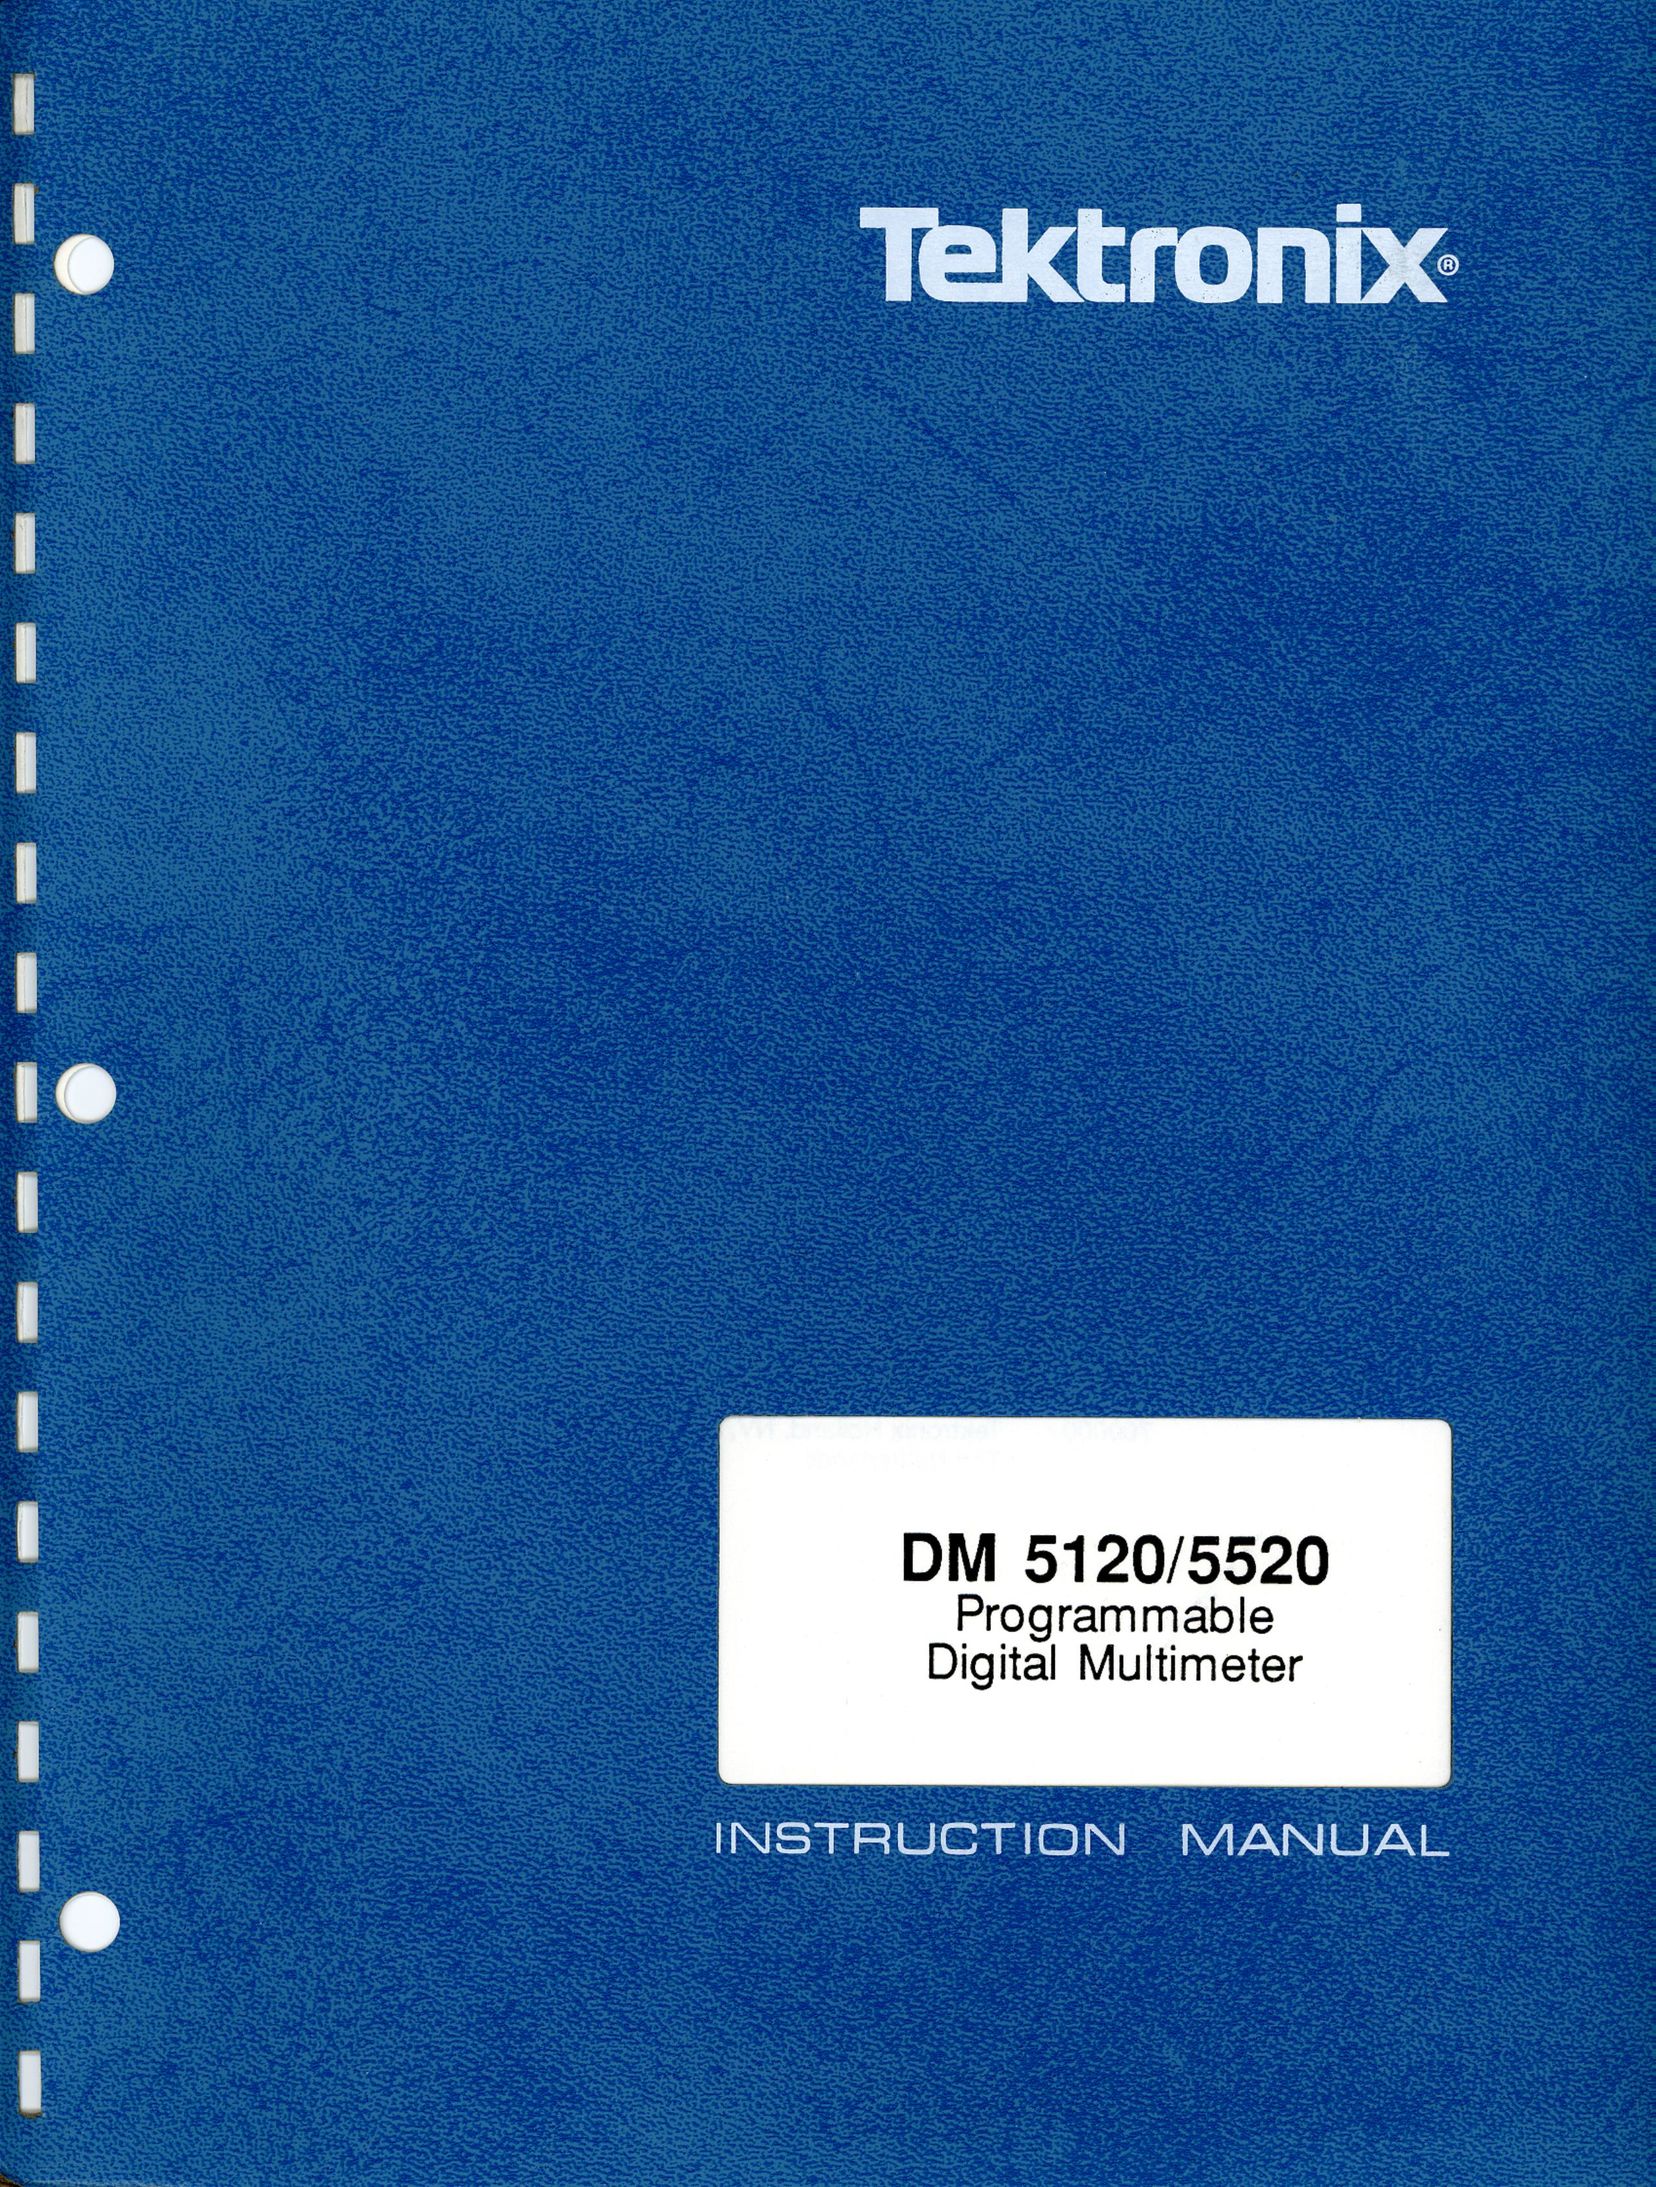 Tektronix DM 5520 Caulking Gun User Manual